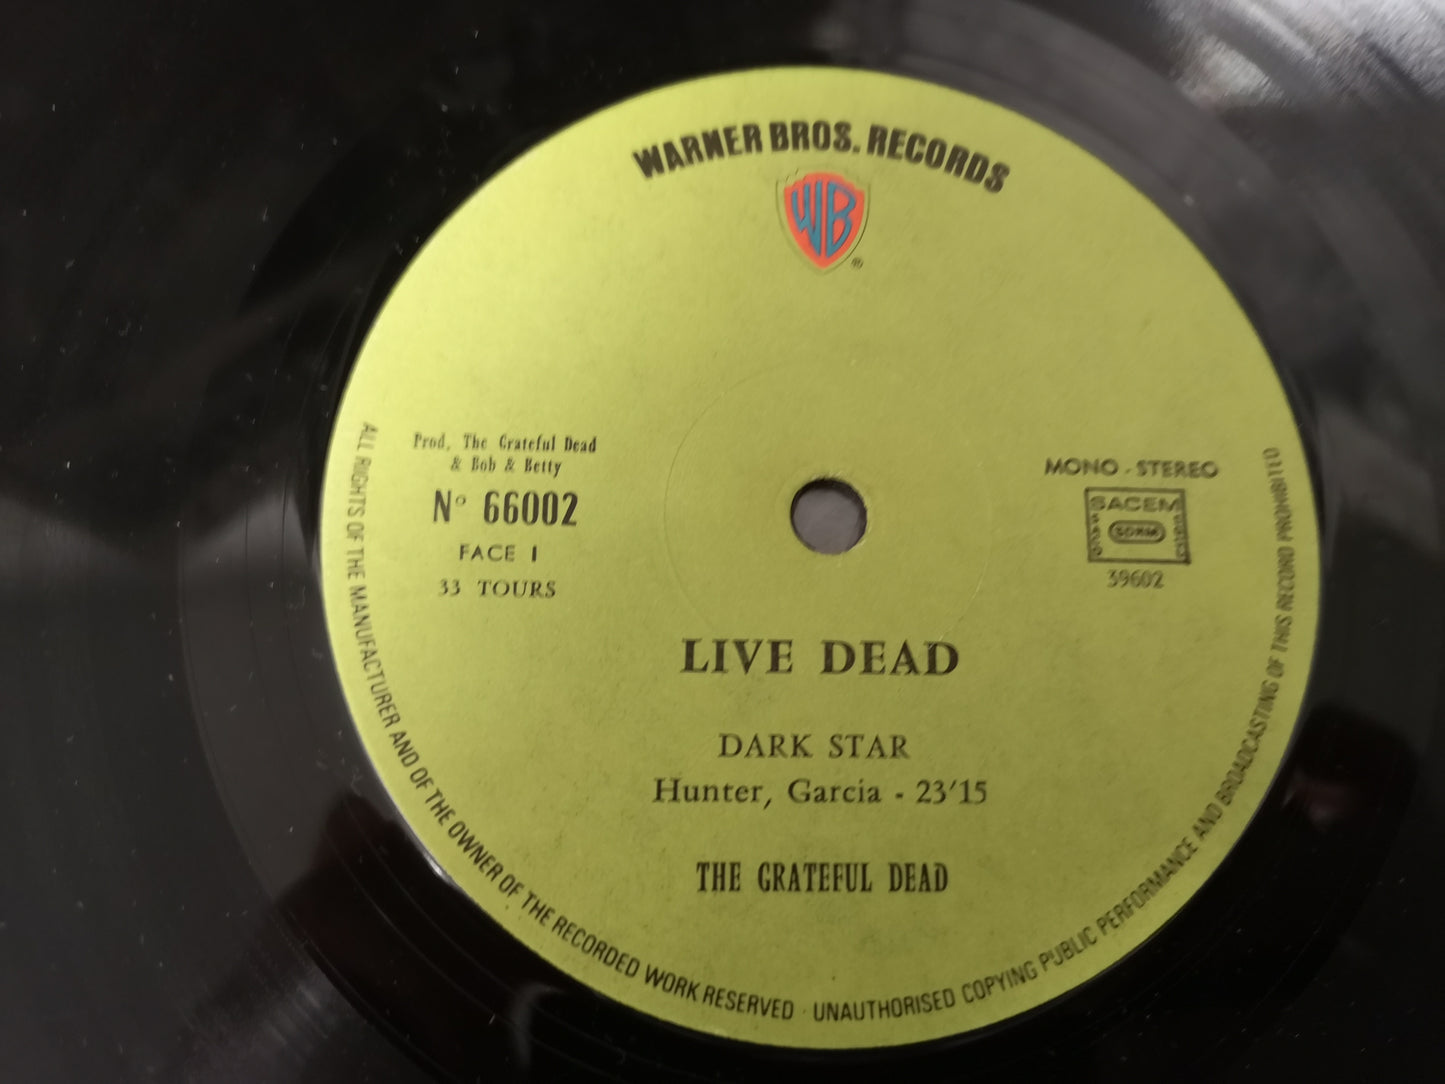 Grateful Dead "Live/Dead" Orig France 1971 EX/VG++ 2Lps